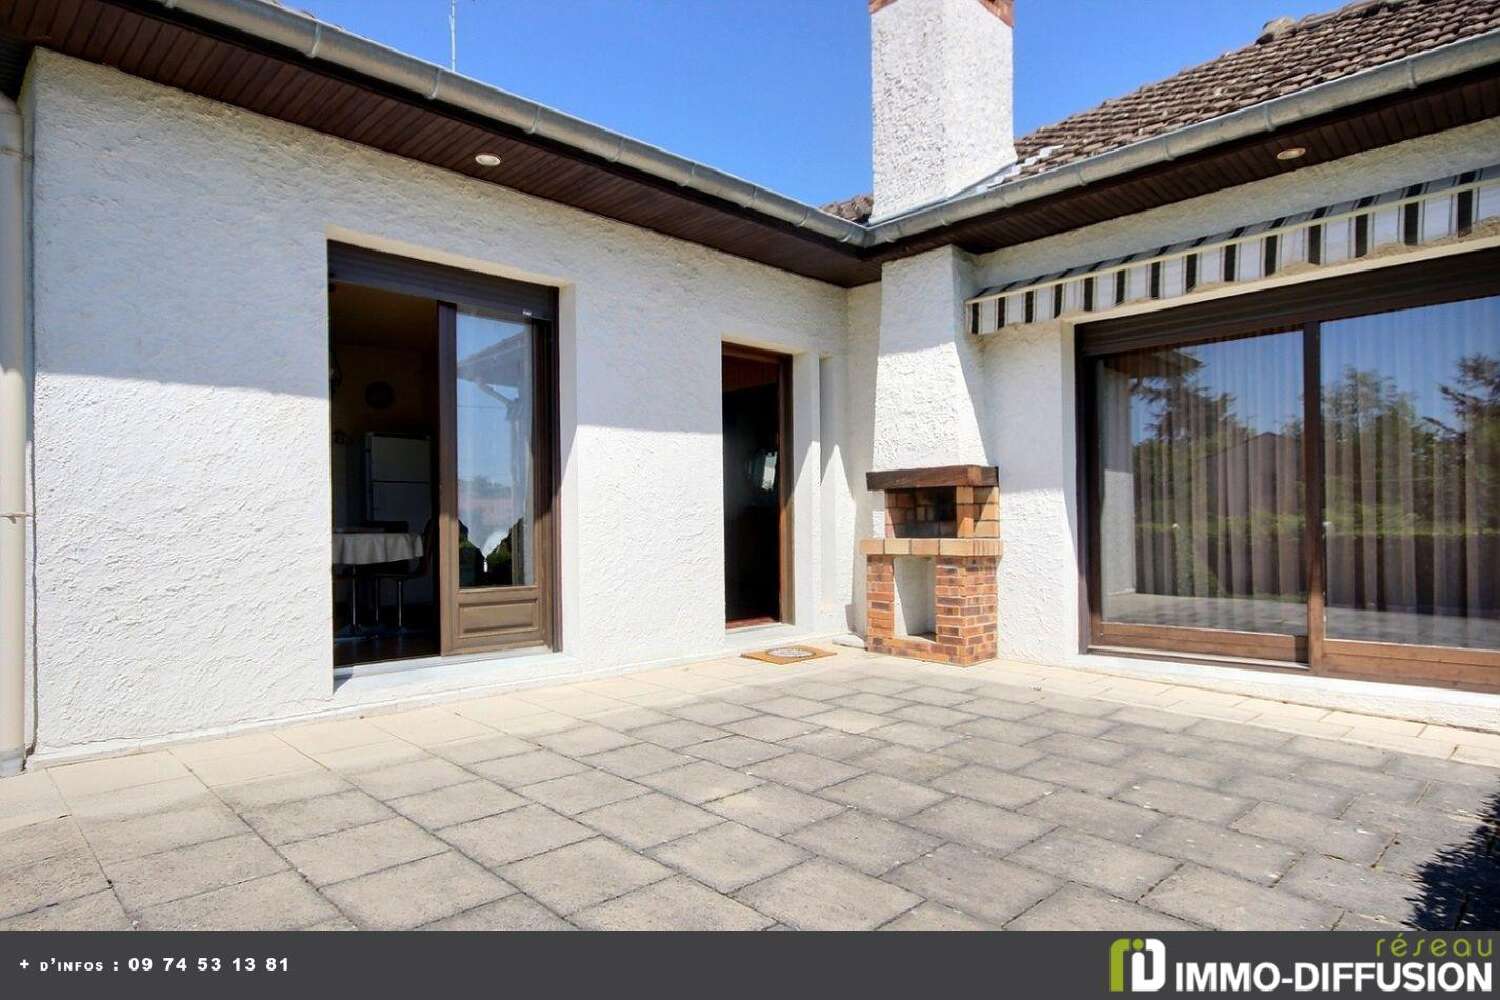  à vendre maison Montrond-les-Bains Loire 5